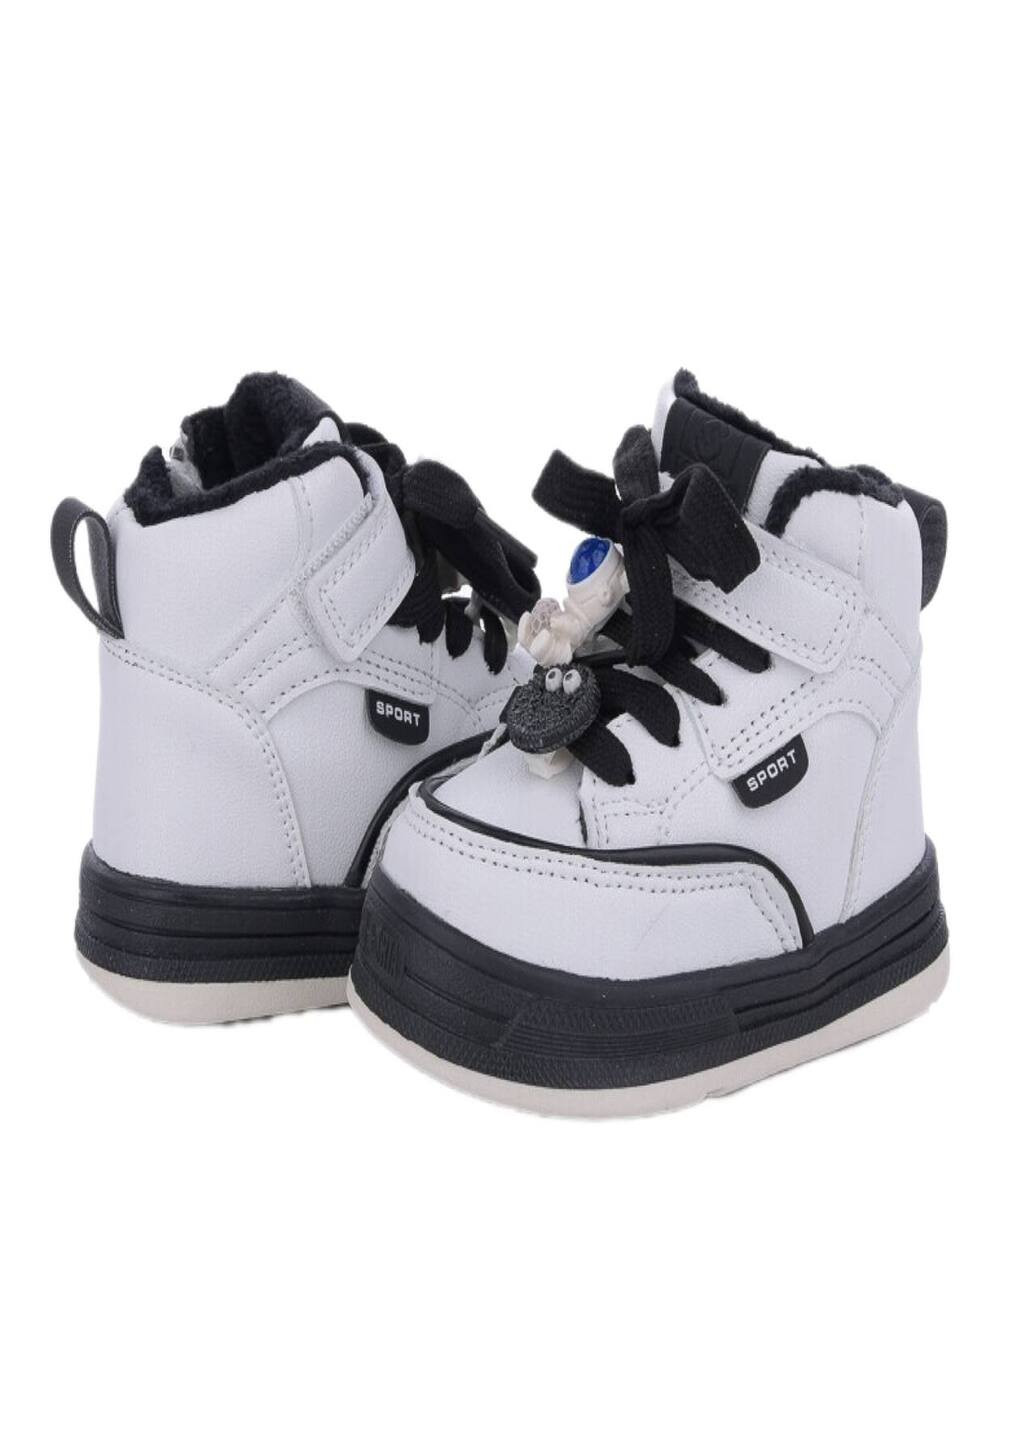 Черно-белые осенние ботинки хайтопы для девочки в бело/черном цвете. Paliament